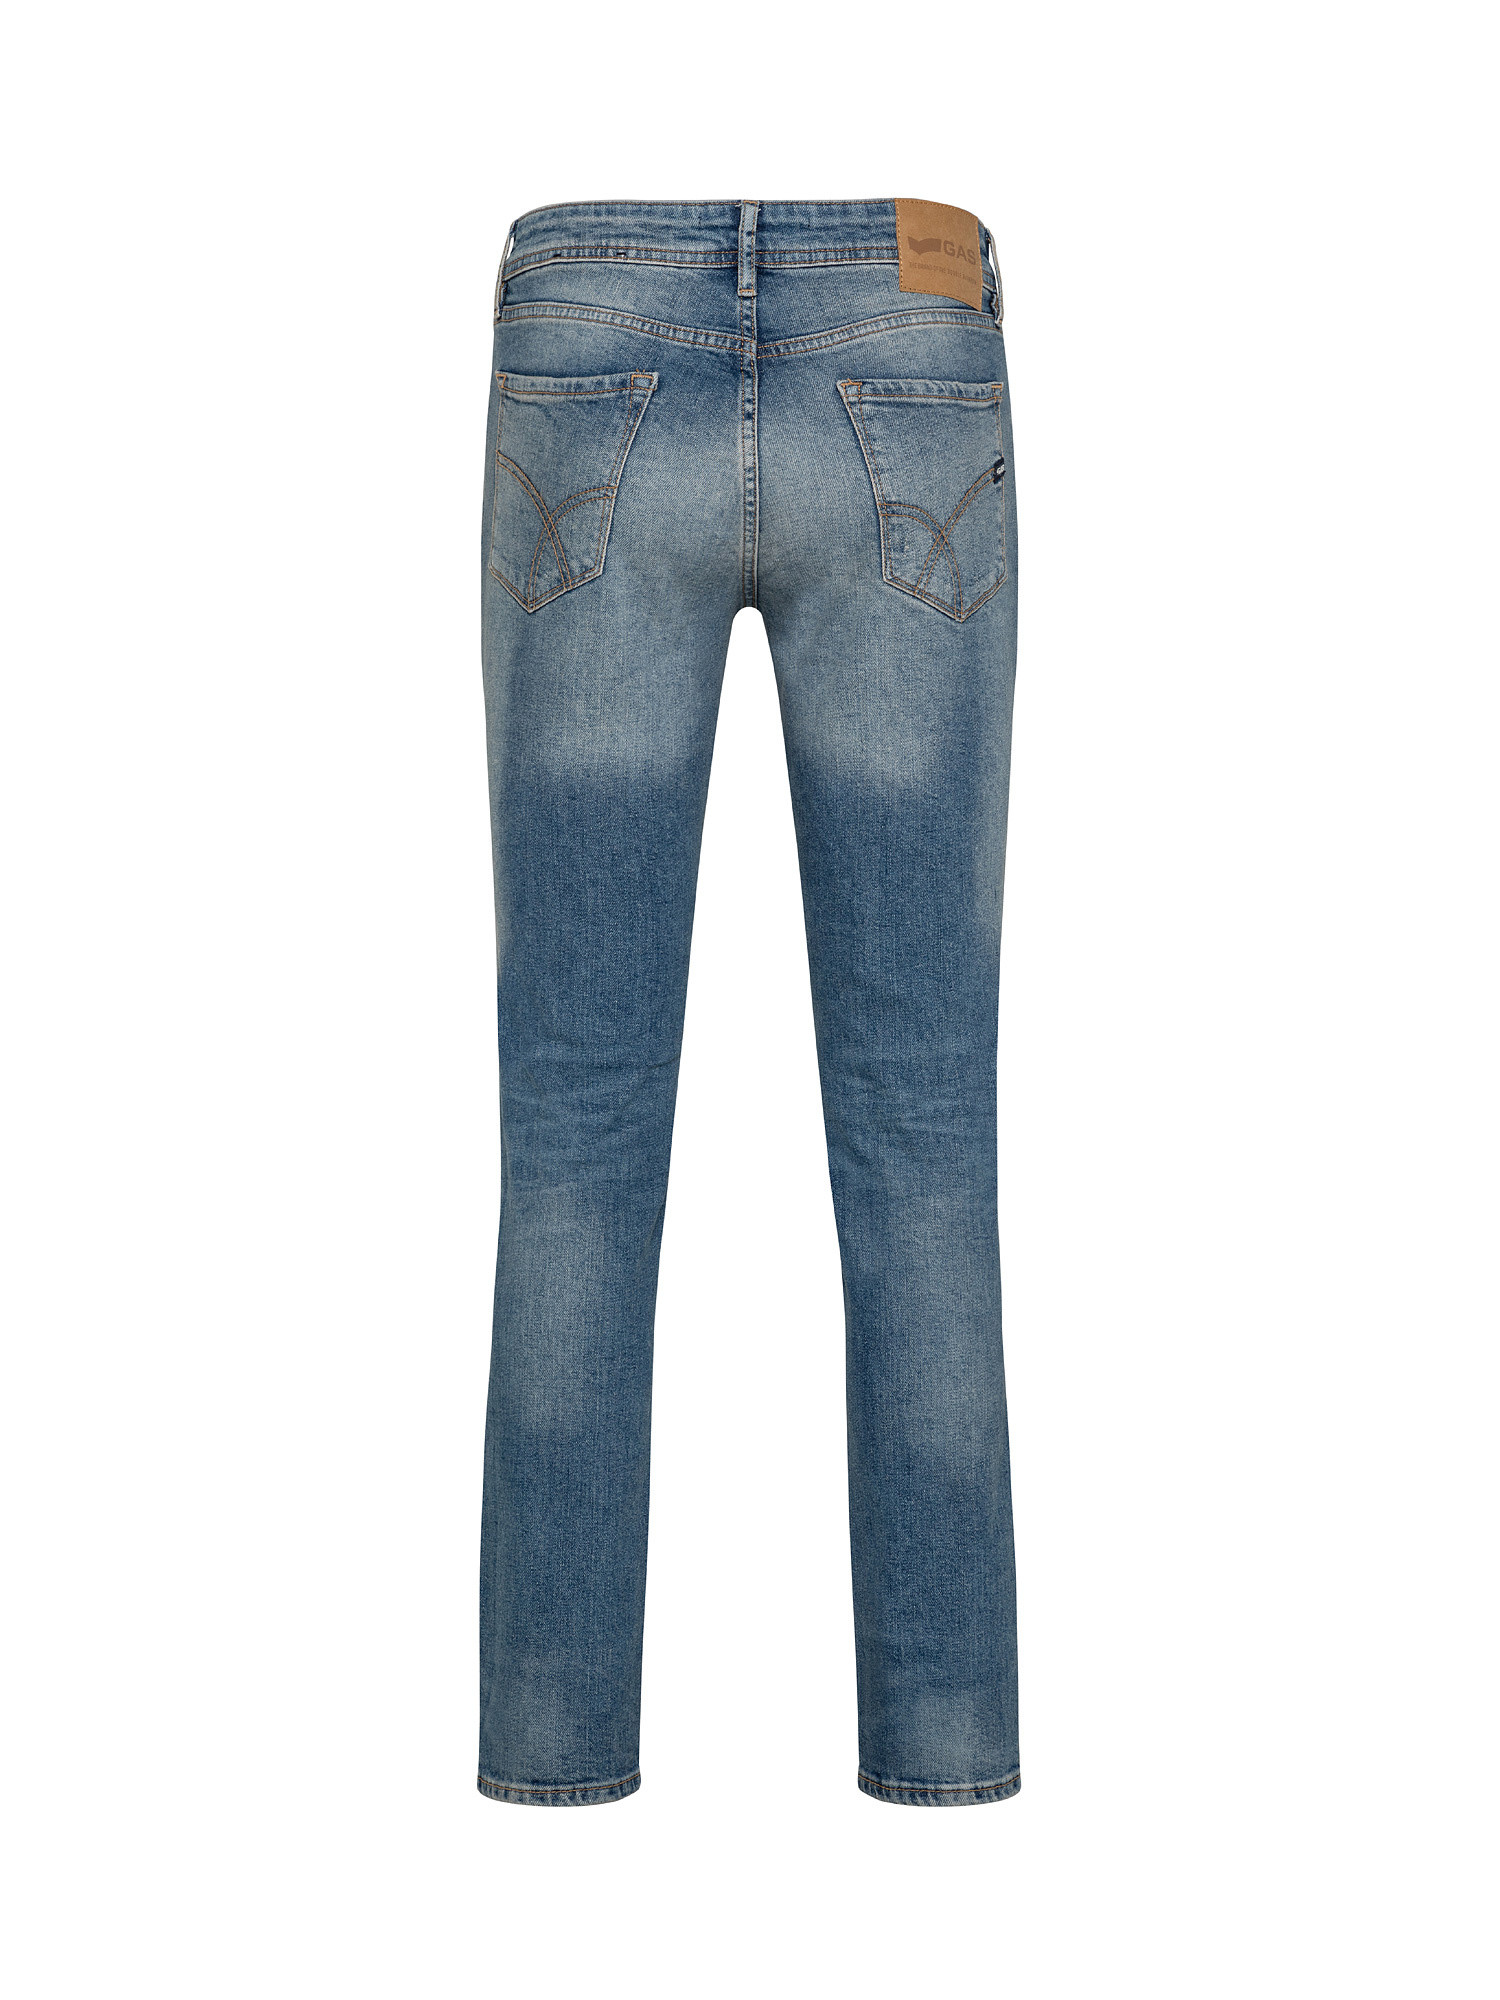 Stretch skinny jeans, Denim, large image number 1